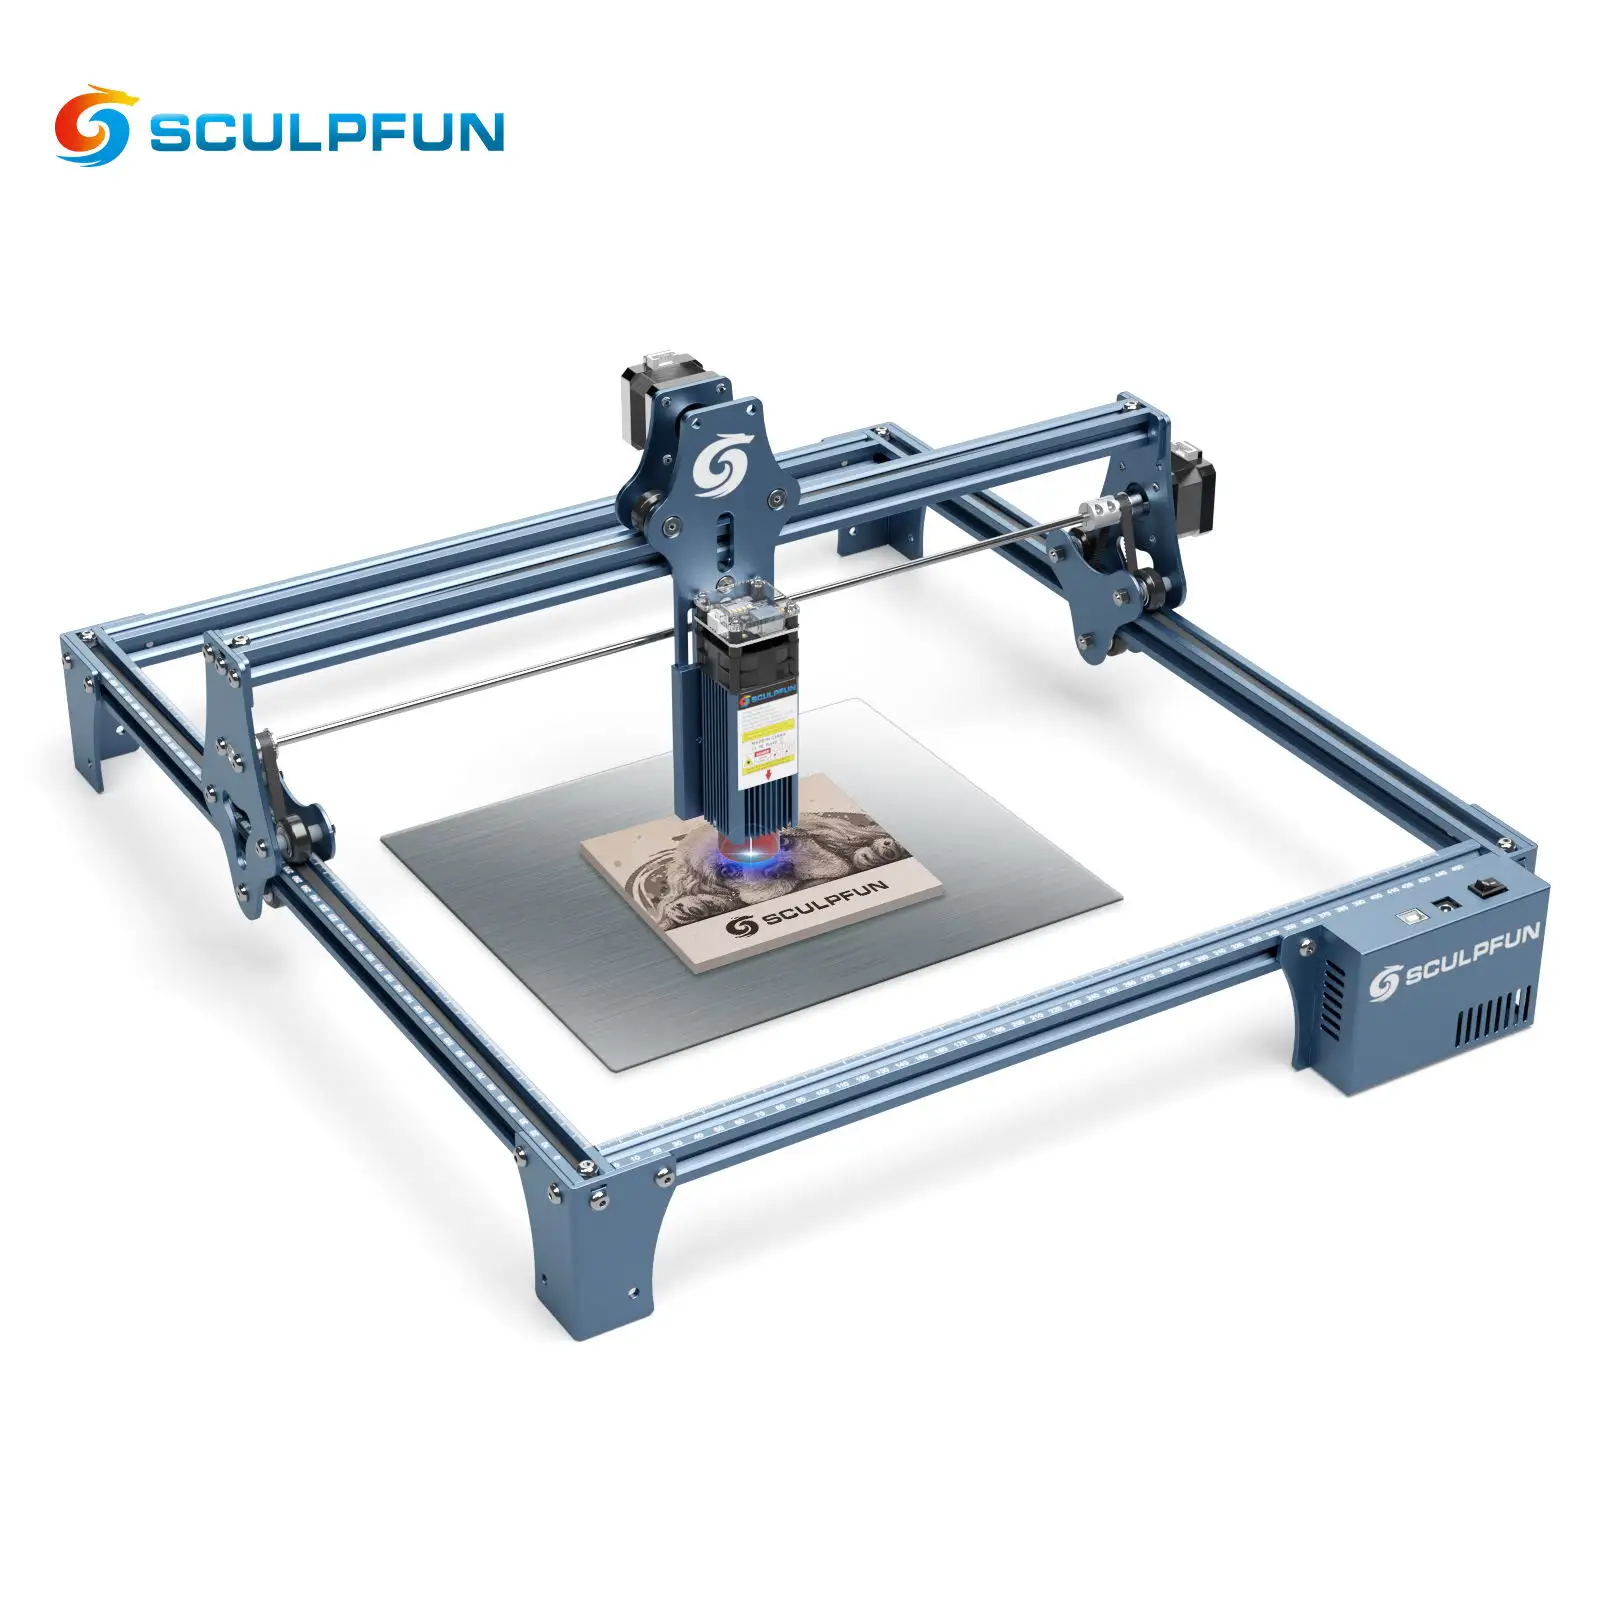 SCULPFUN S9 Handicraft Gift Laser Engraving Auto Cutting Machine 90W mini Laser Marking Machine